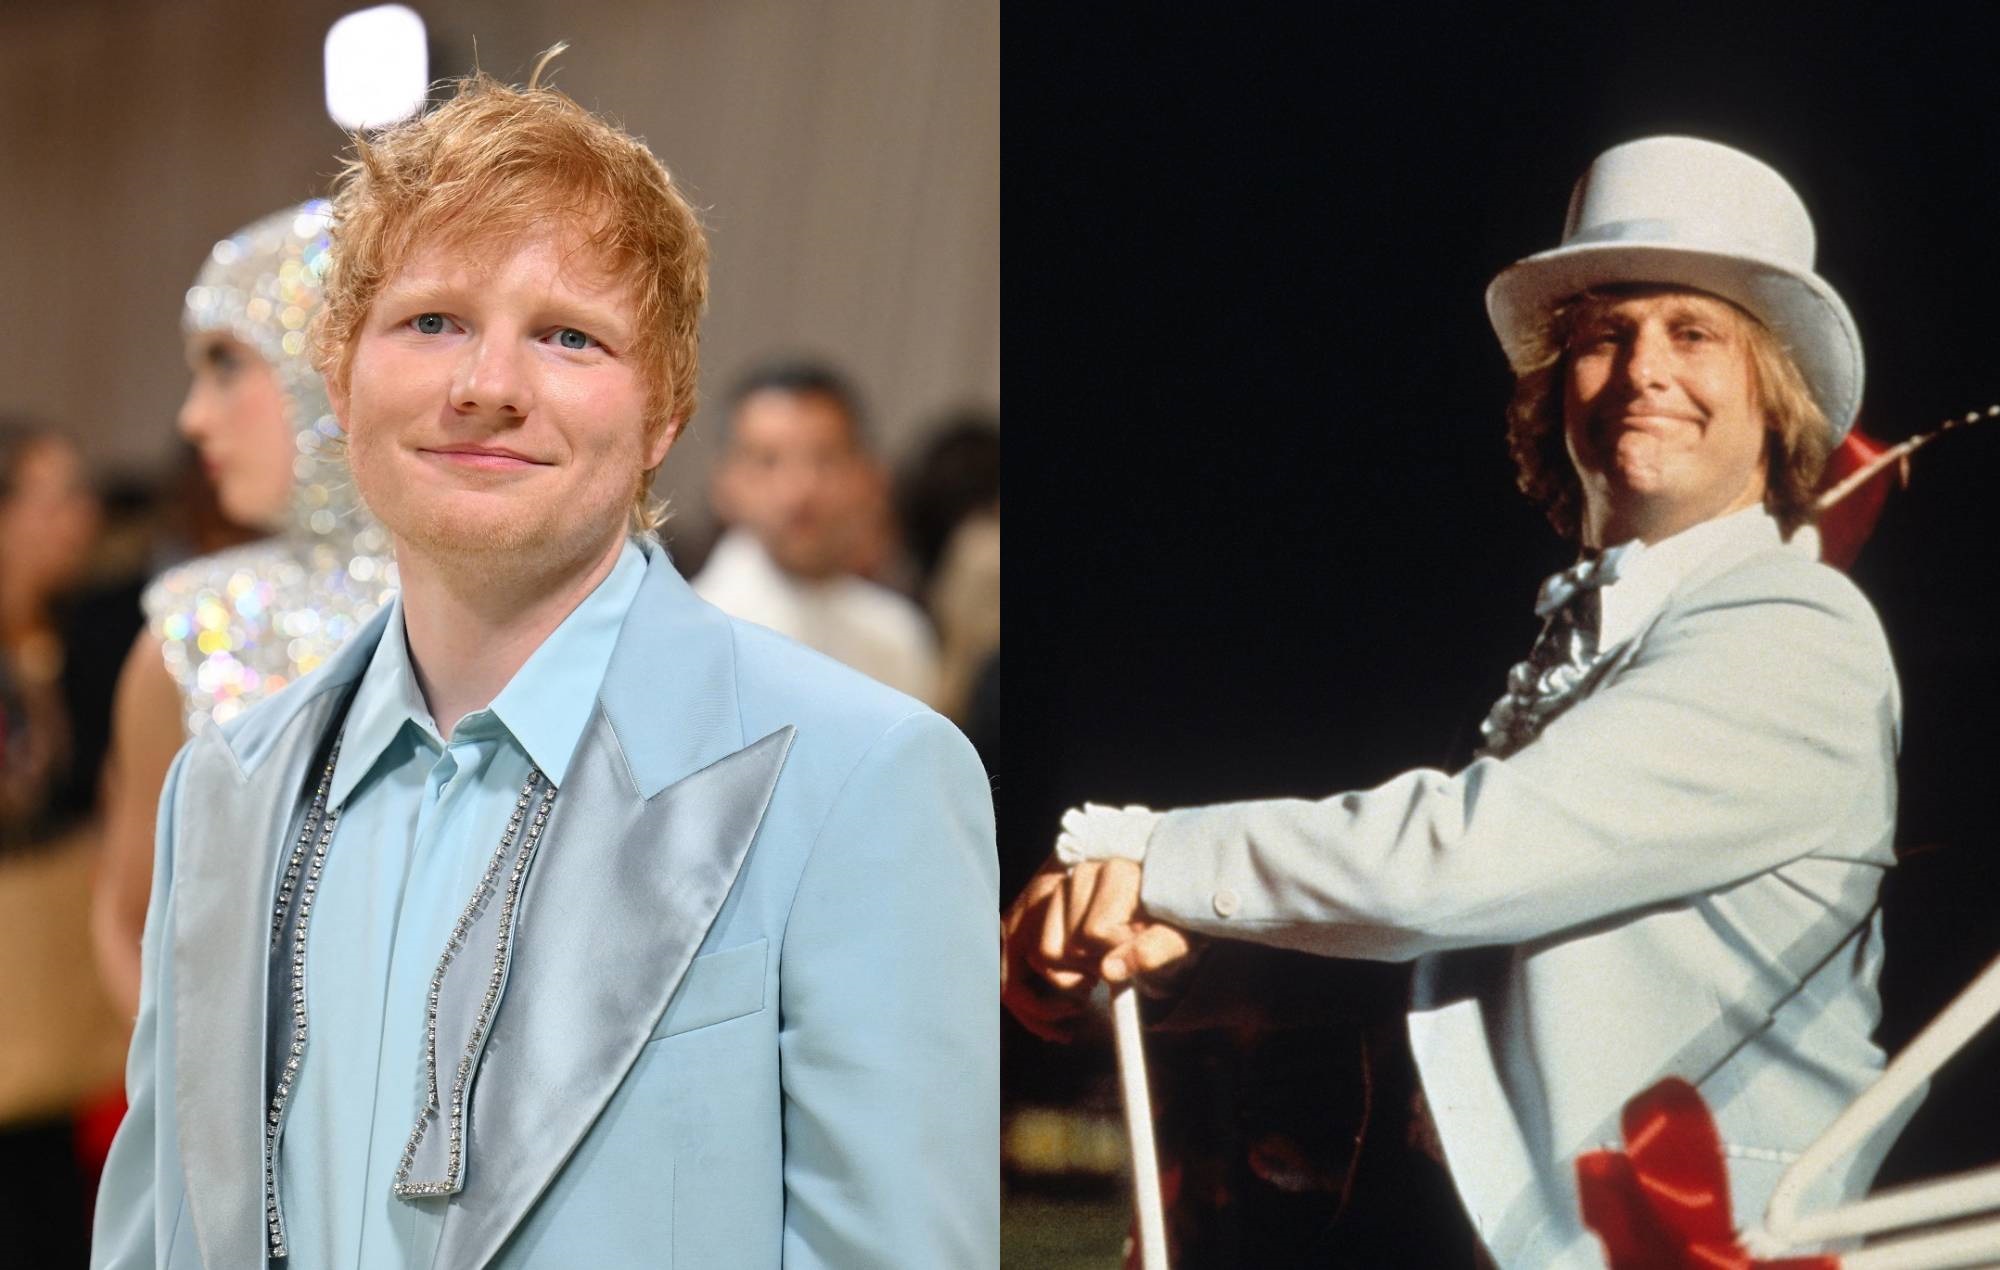 Los fans comparan el traje de Ed Sheeran en la Gala del Met con el look de 'Dumb &amp; Dumber' y 'High School Musical'